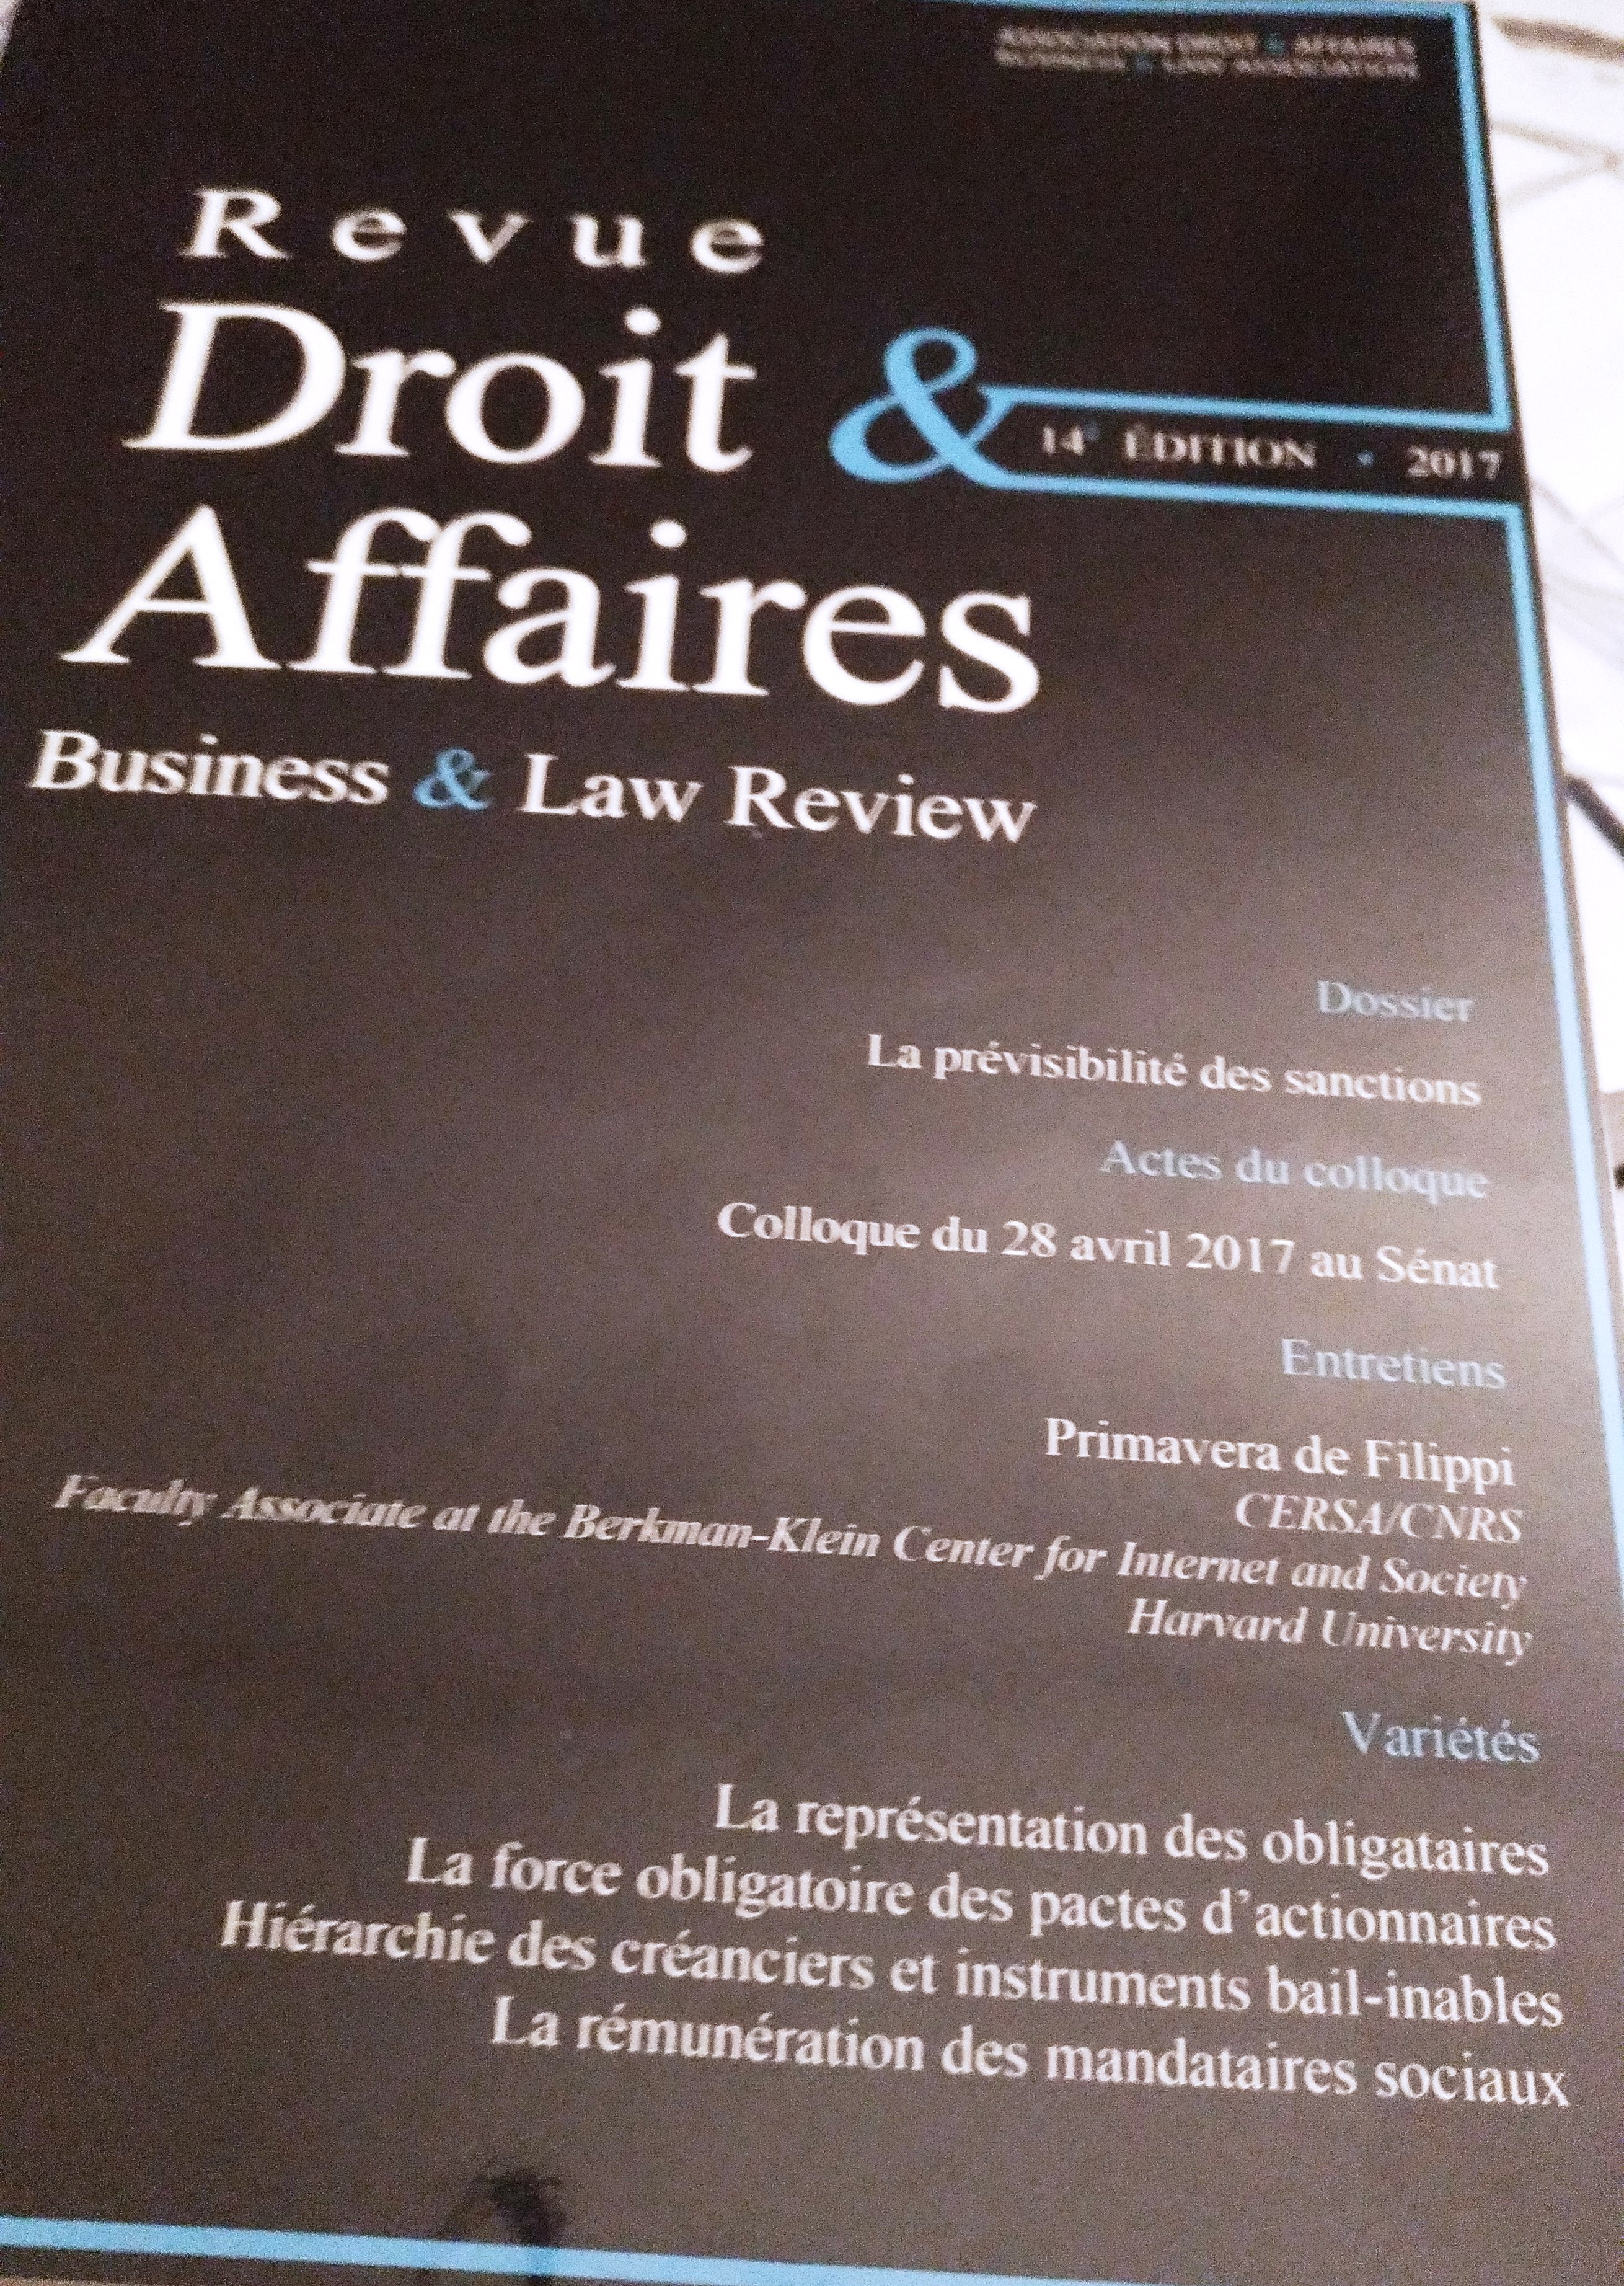 L'AD&A publie la 14e édition de la Revue Droit & Affaires, avec pour thème "La prévisibilité des sanctions".